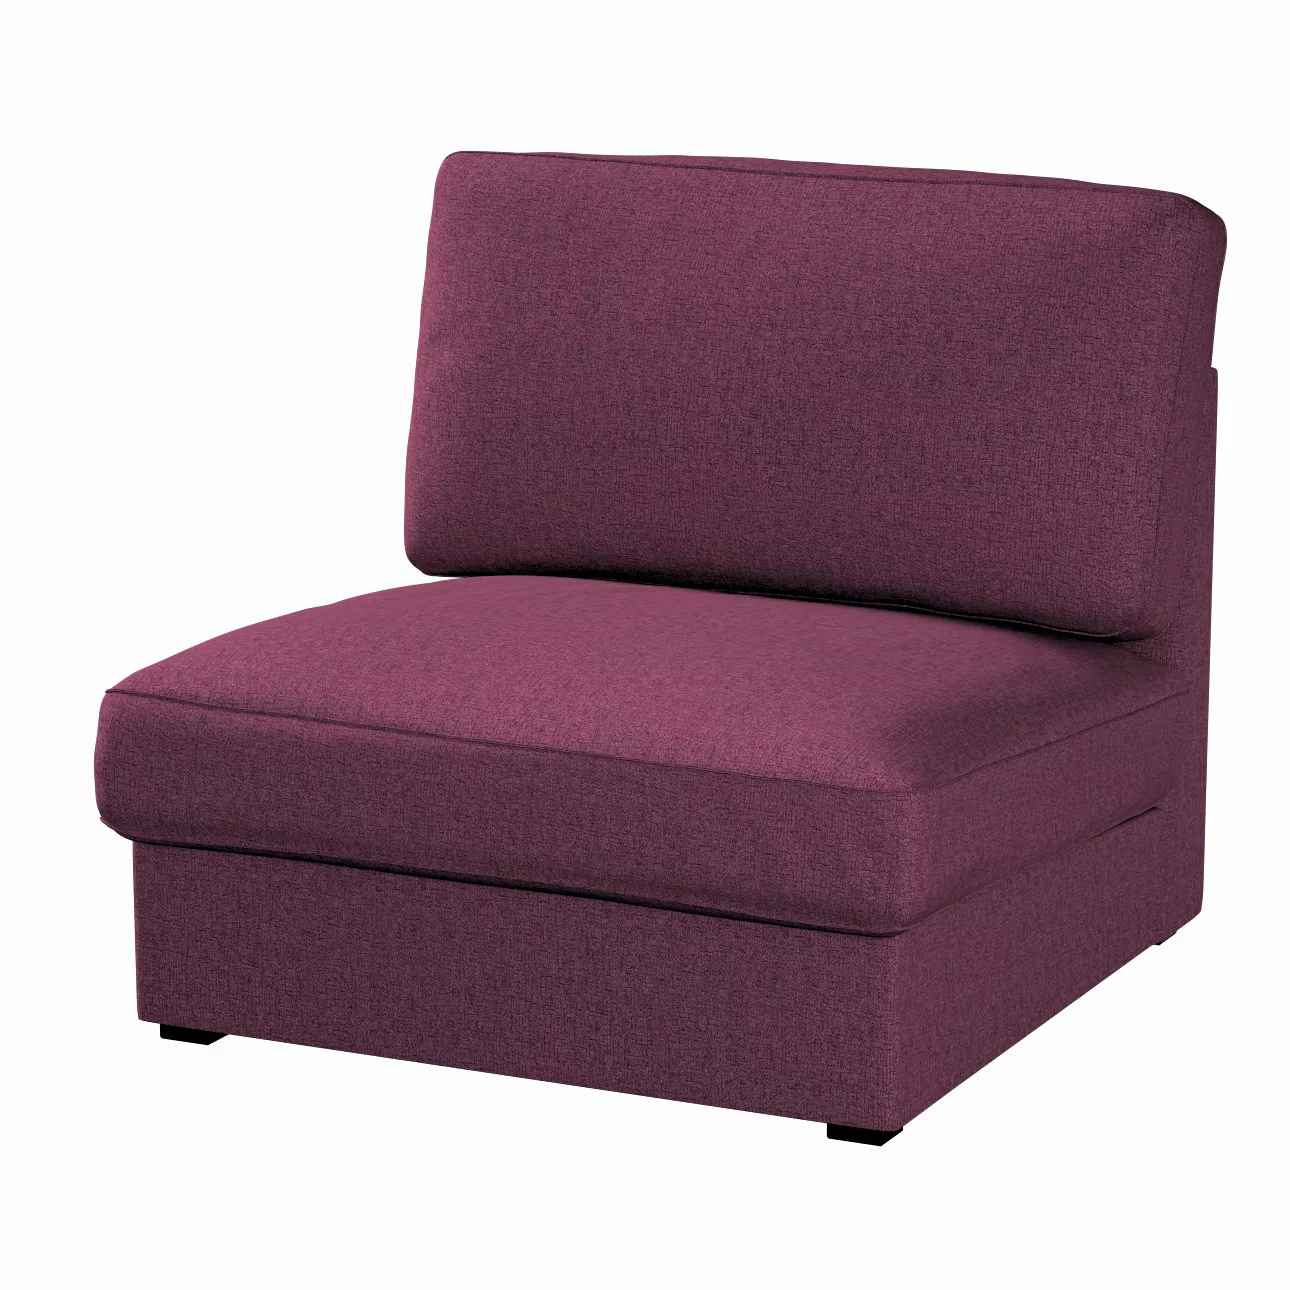 Bezug für Kivik Sessel nicht ausklappbar, pflaumenviolett, Bezug für Sessel günstig online kaufen